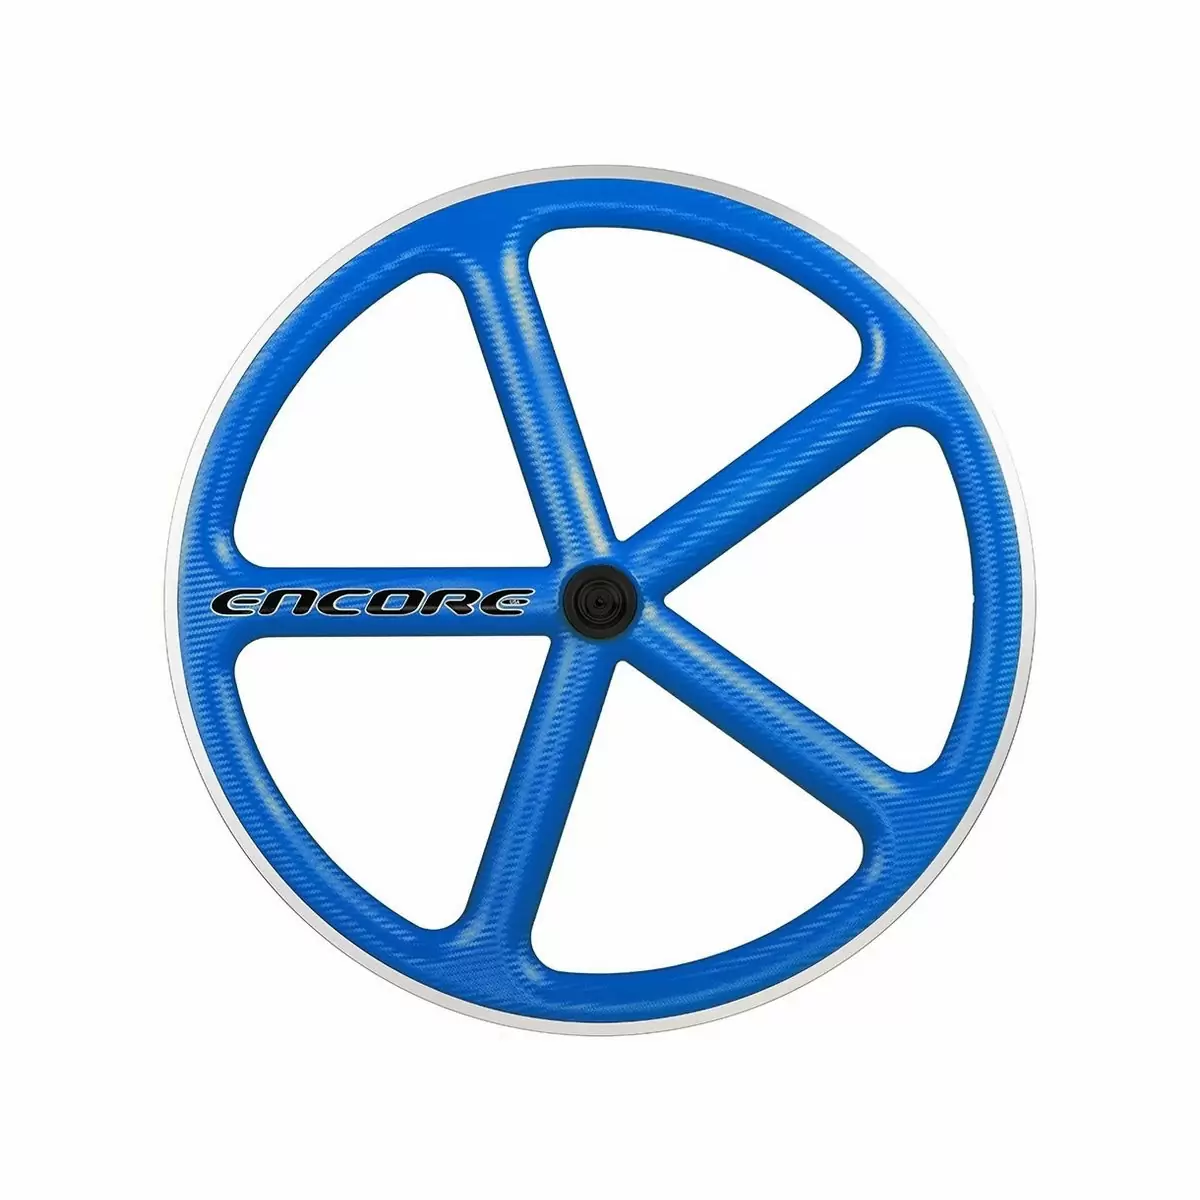 Hinterrad 700c Track 5 Speichen Carbon Geflecht blau msw - image